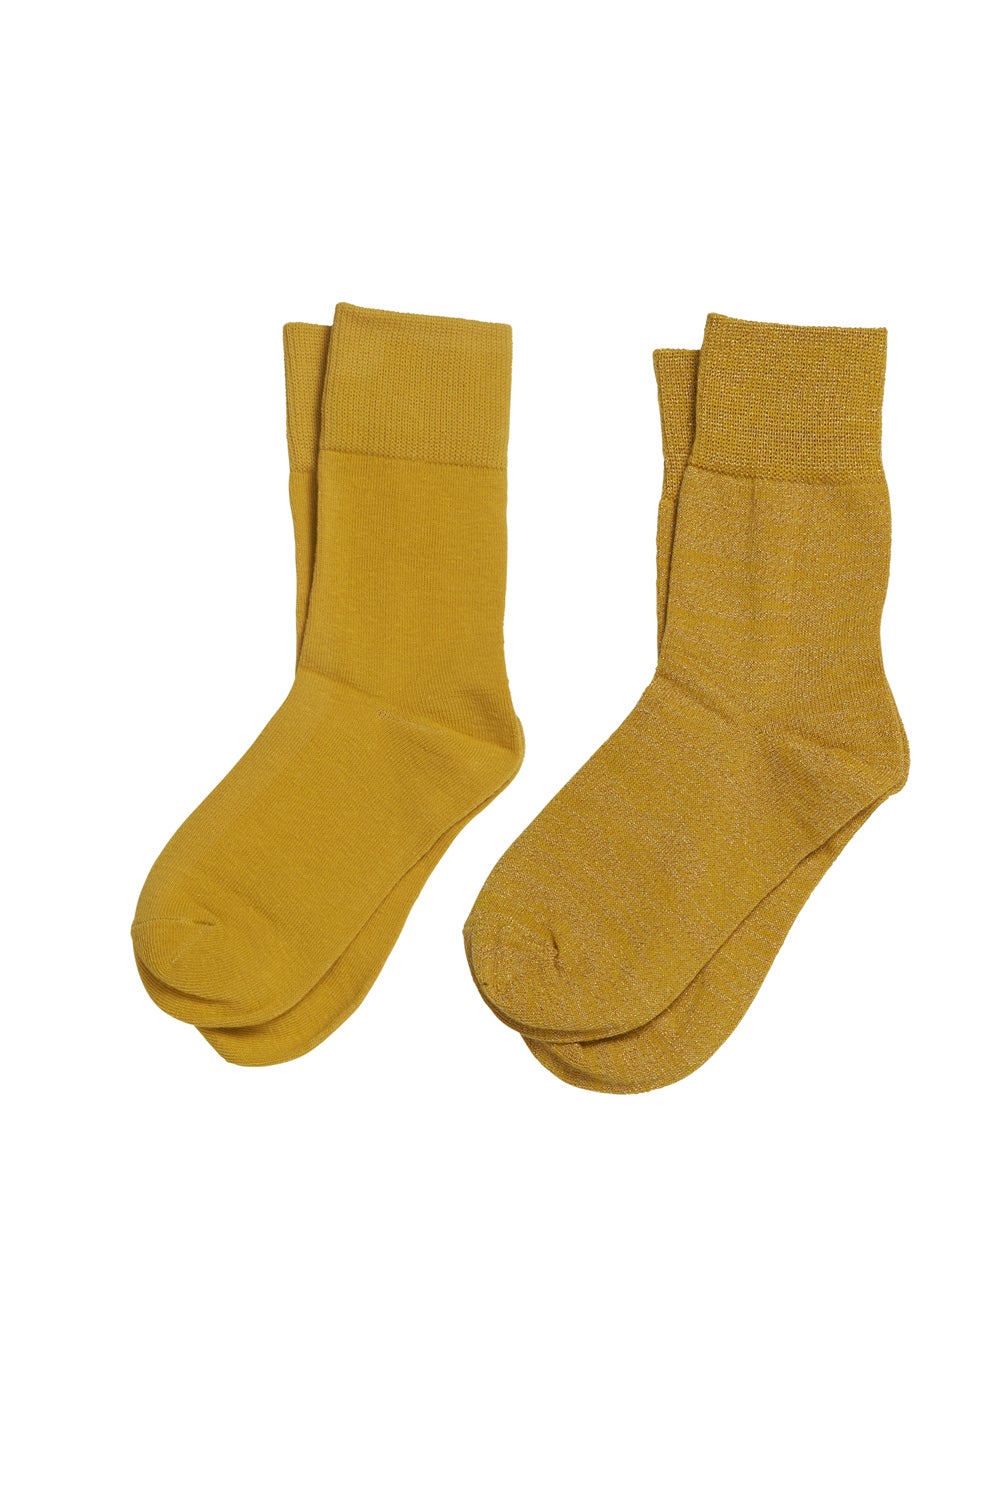 Mustard Socks 2 Pack